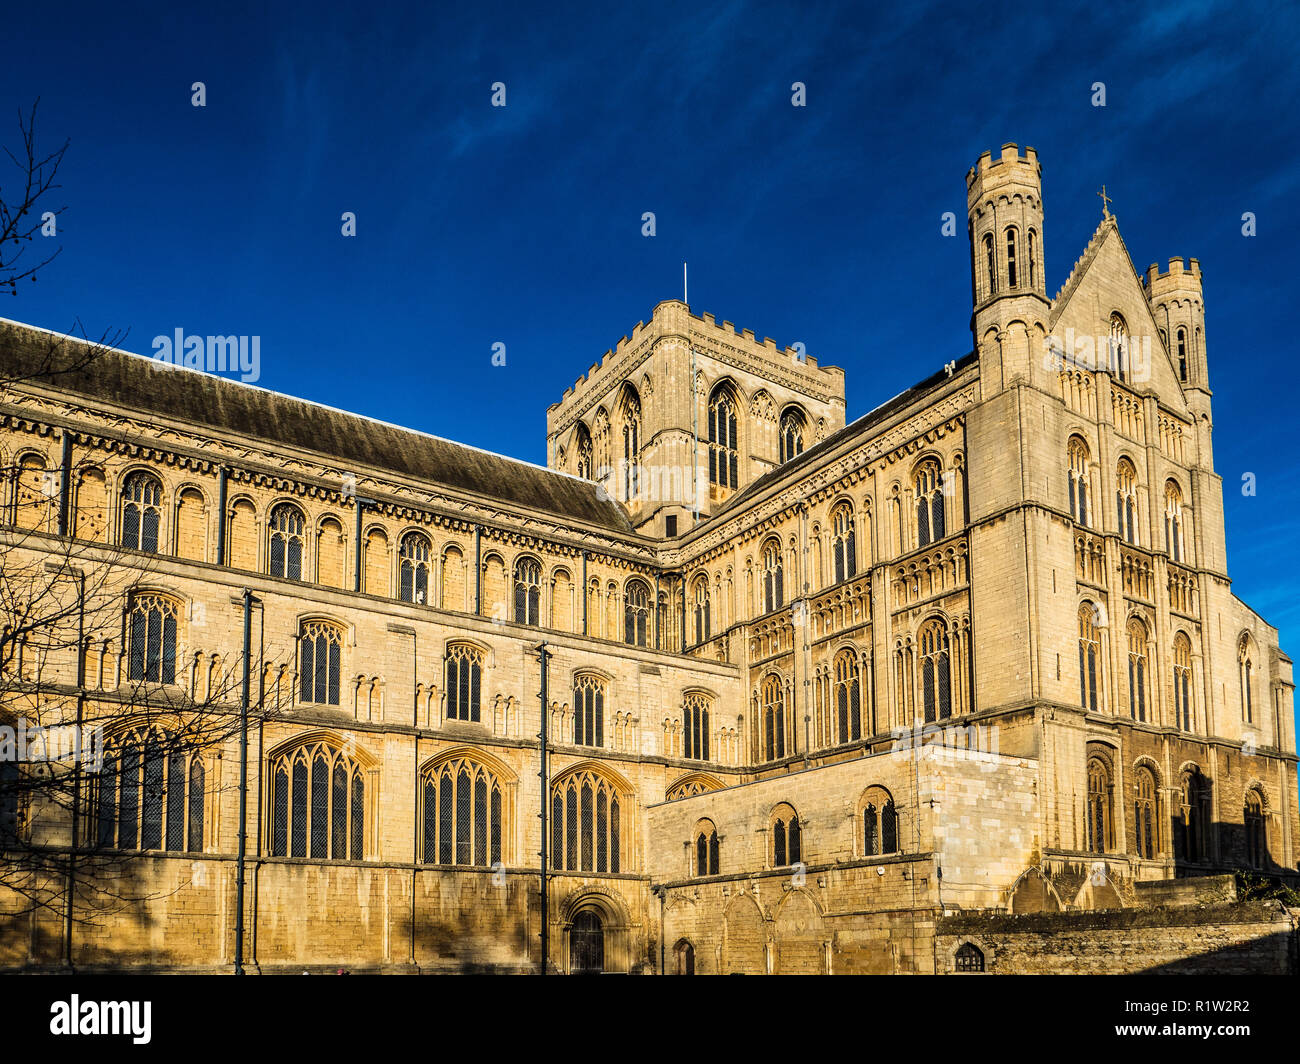 Die Kathedrale von Peterborough Kathedrale oder Kirche St. Peter, St. Paul und St. Andreas in Peterborough GROSSBRITANNIEN. Romanisch-gotischen Stil erbaut 1118 - 1237 Stockfoto